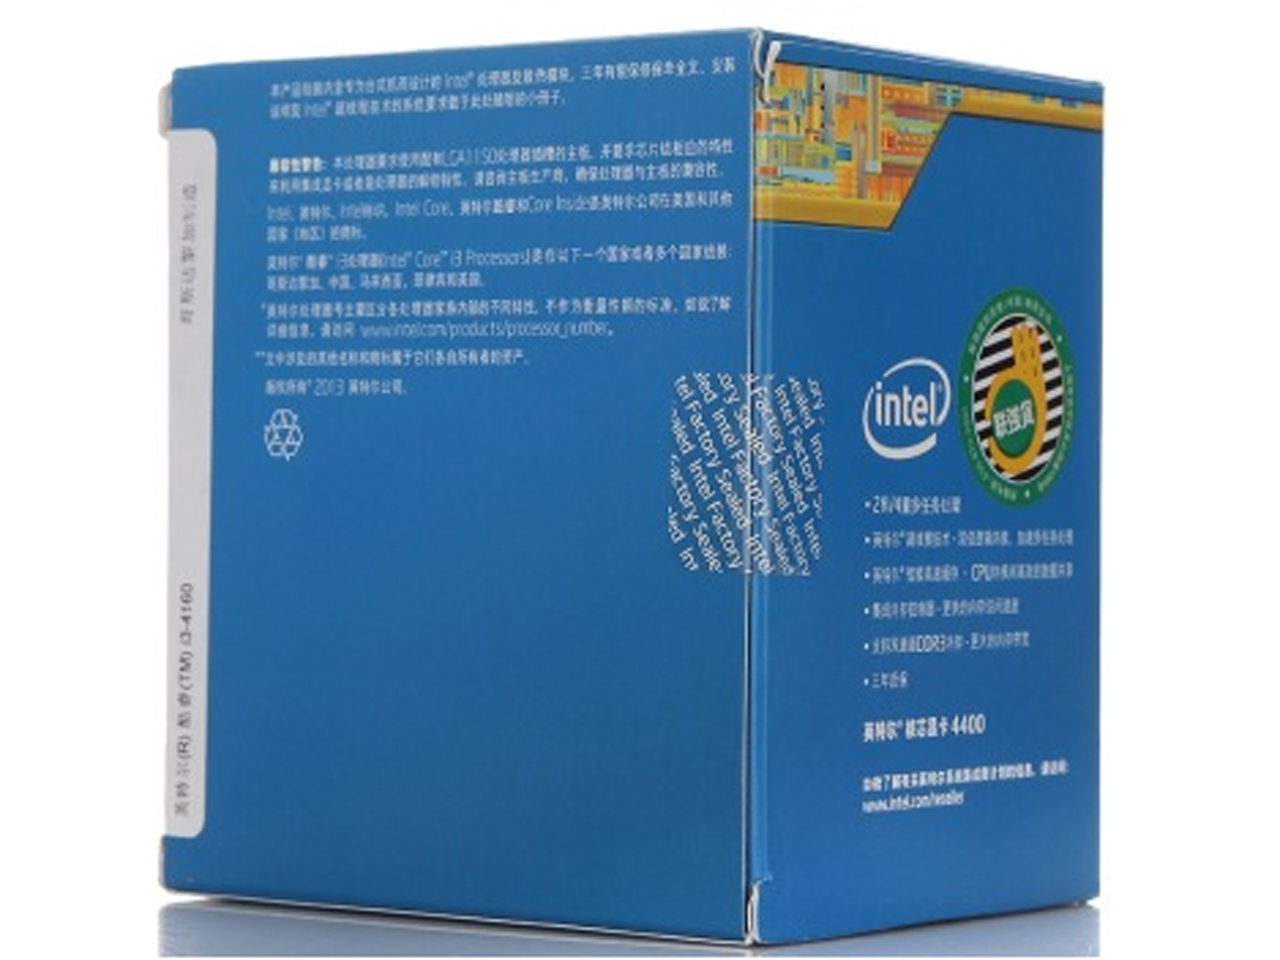 双核处理器 Intel Core i3-4160促650元